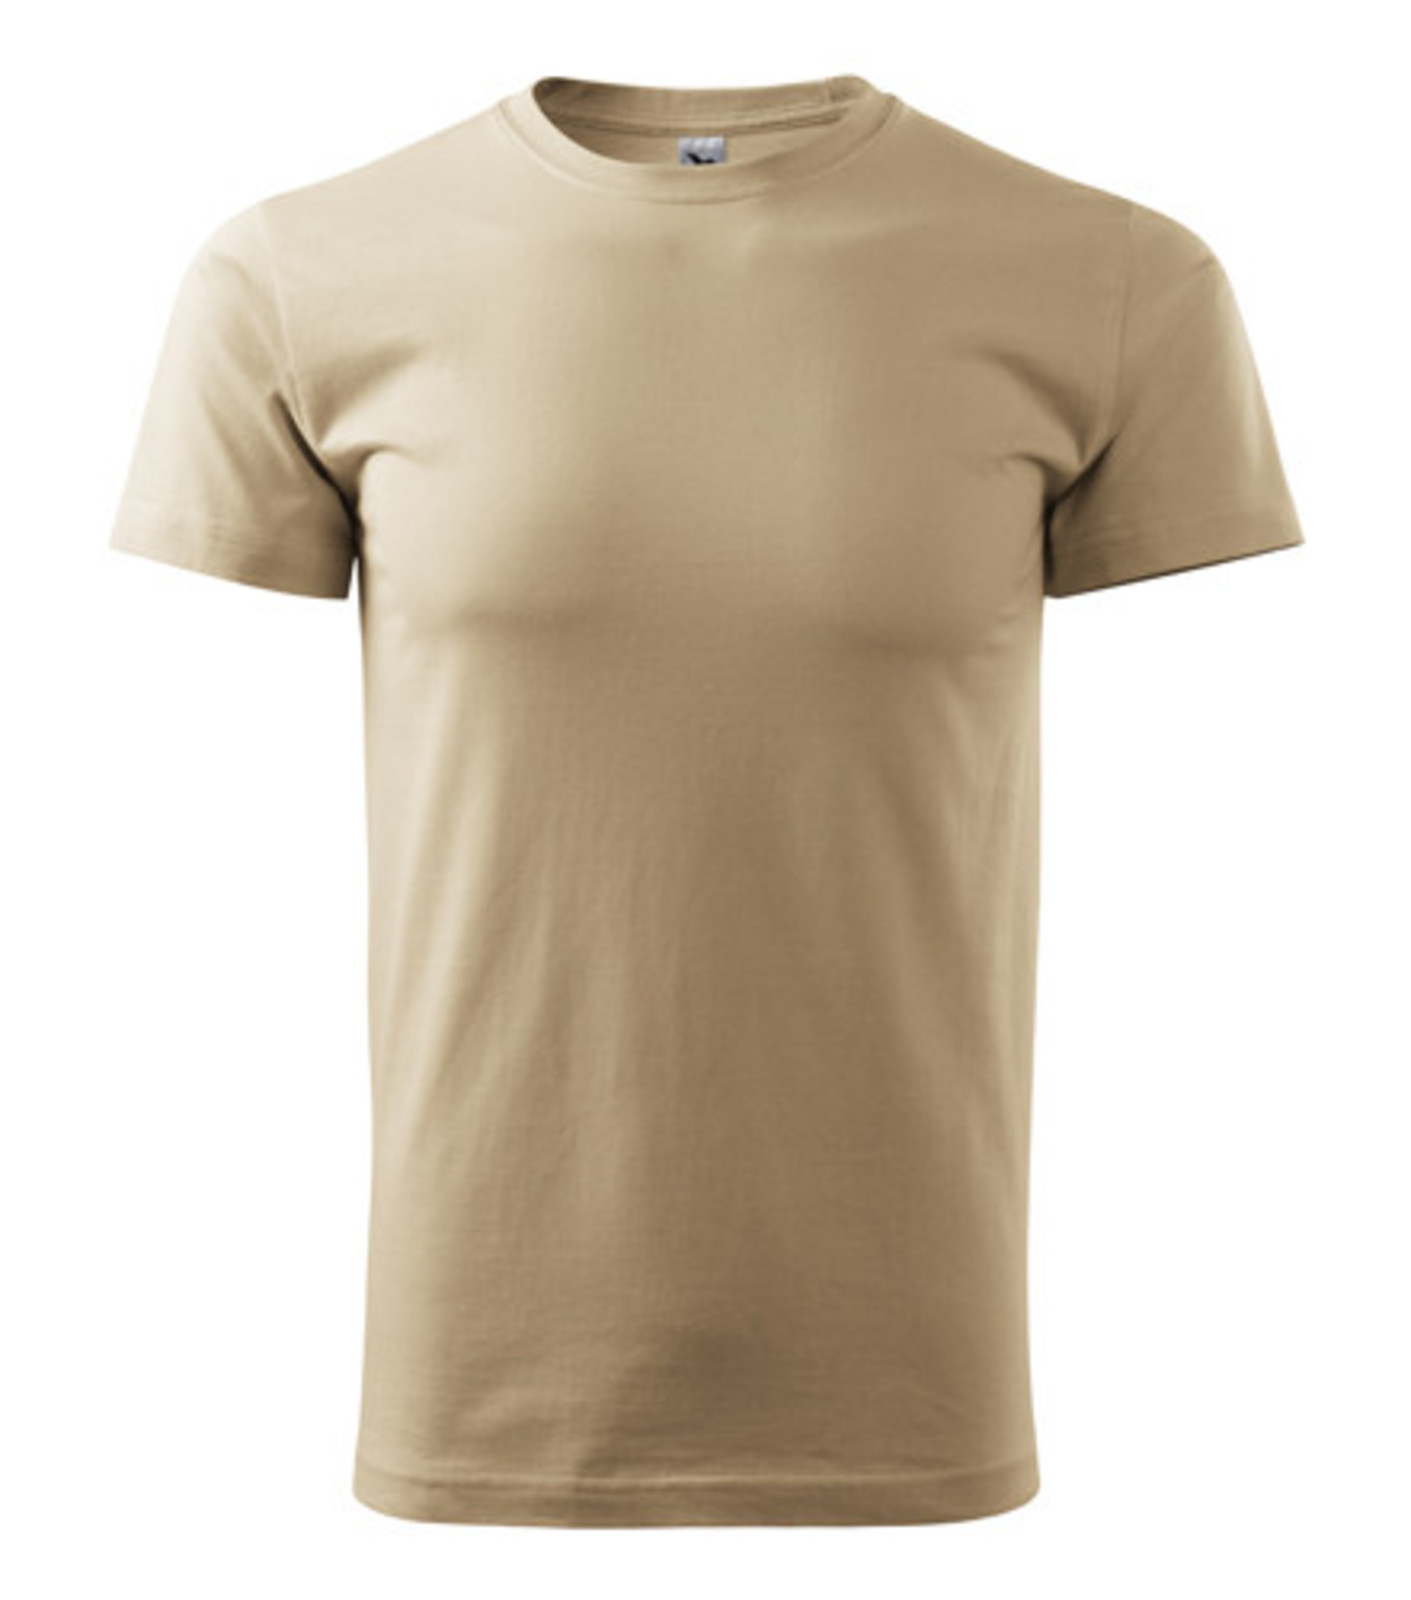 Unisex tričko Malfini Heavy New 137 - veľkosť: S, farba: piesková